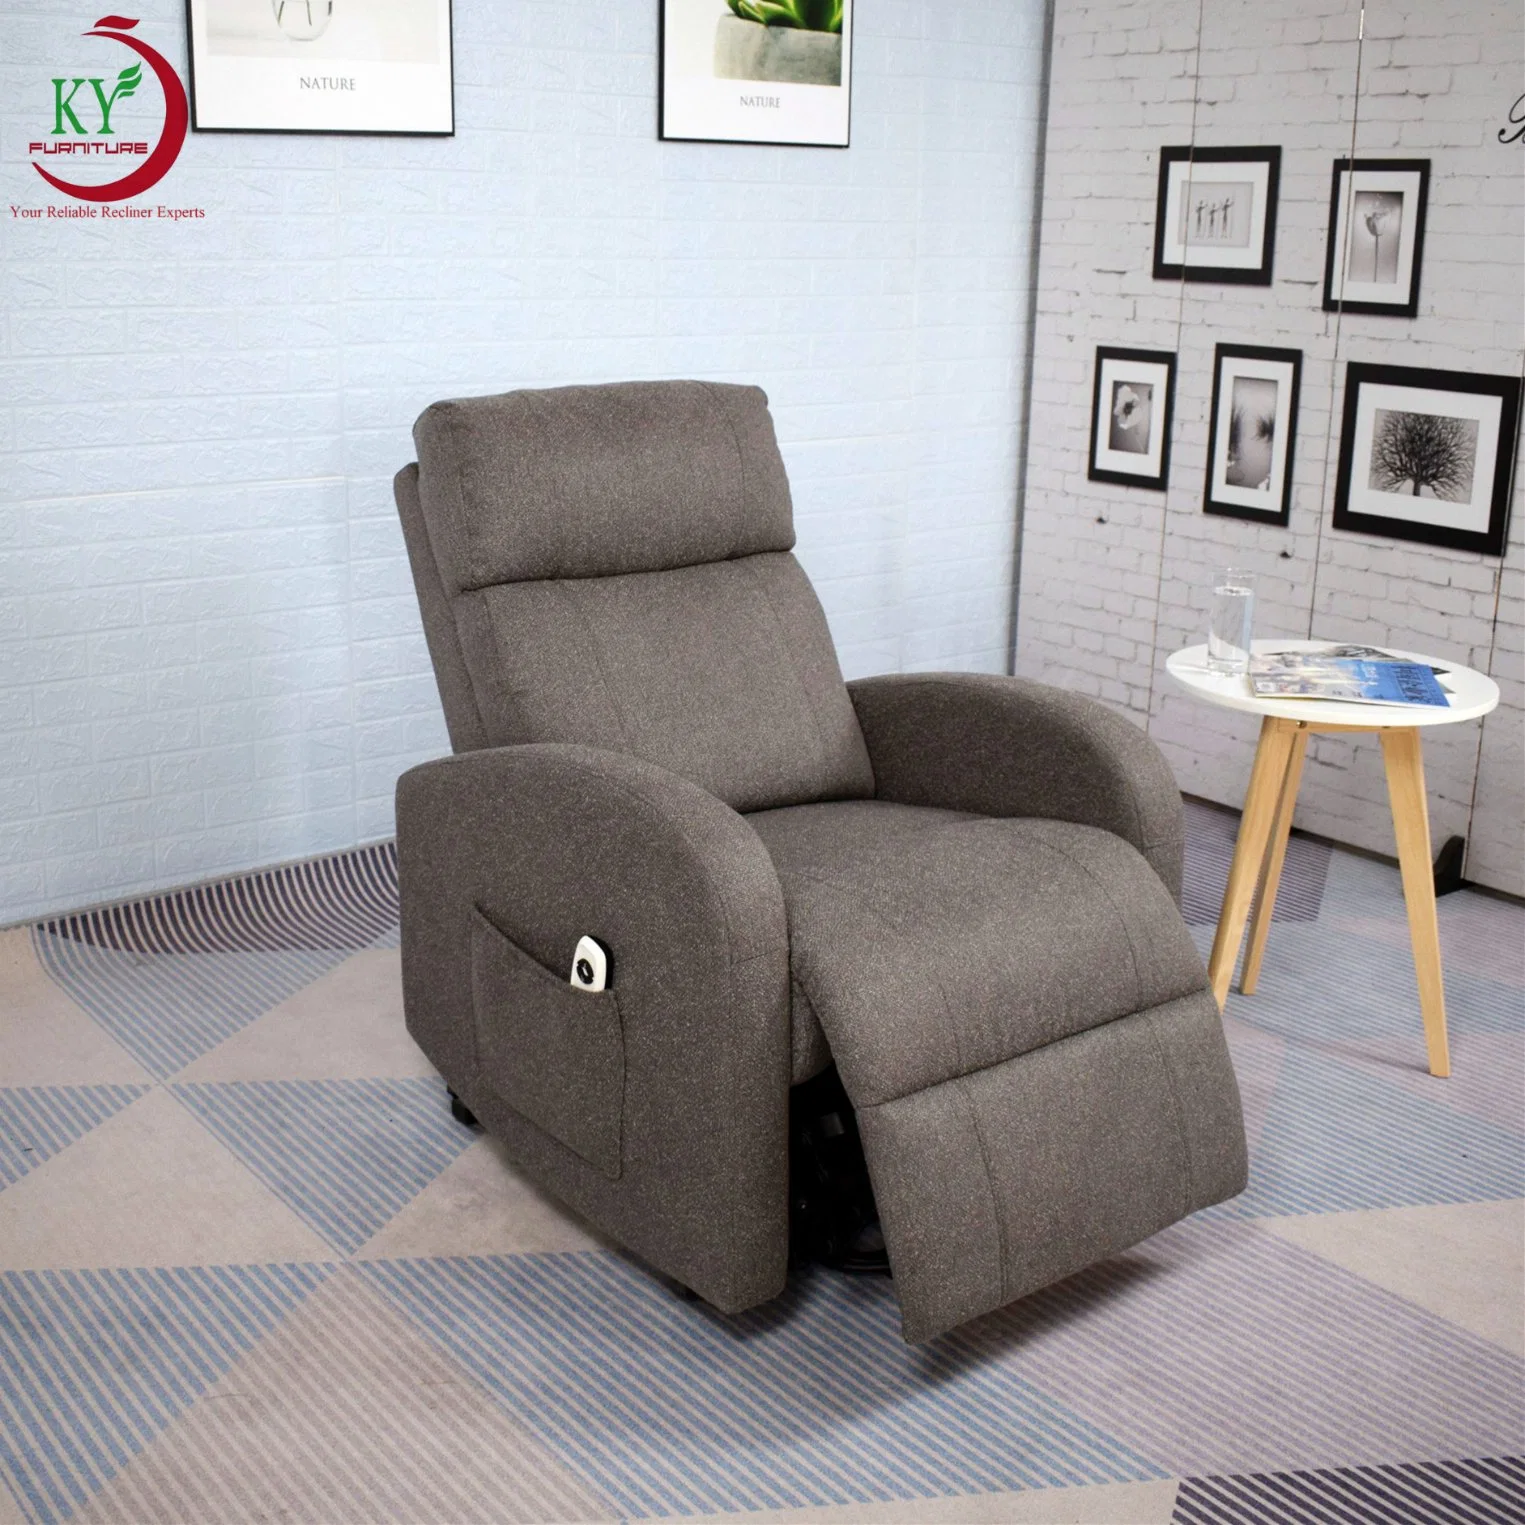 Cadeira de elevação poder Zero Gravity com tecido de design moderno Geeksofa Motor Okin duplo